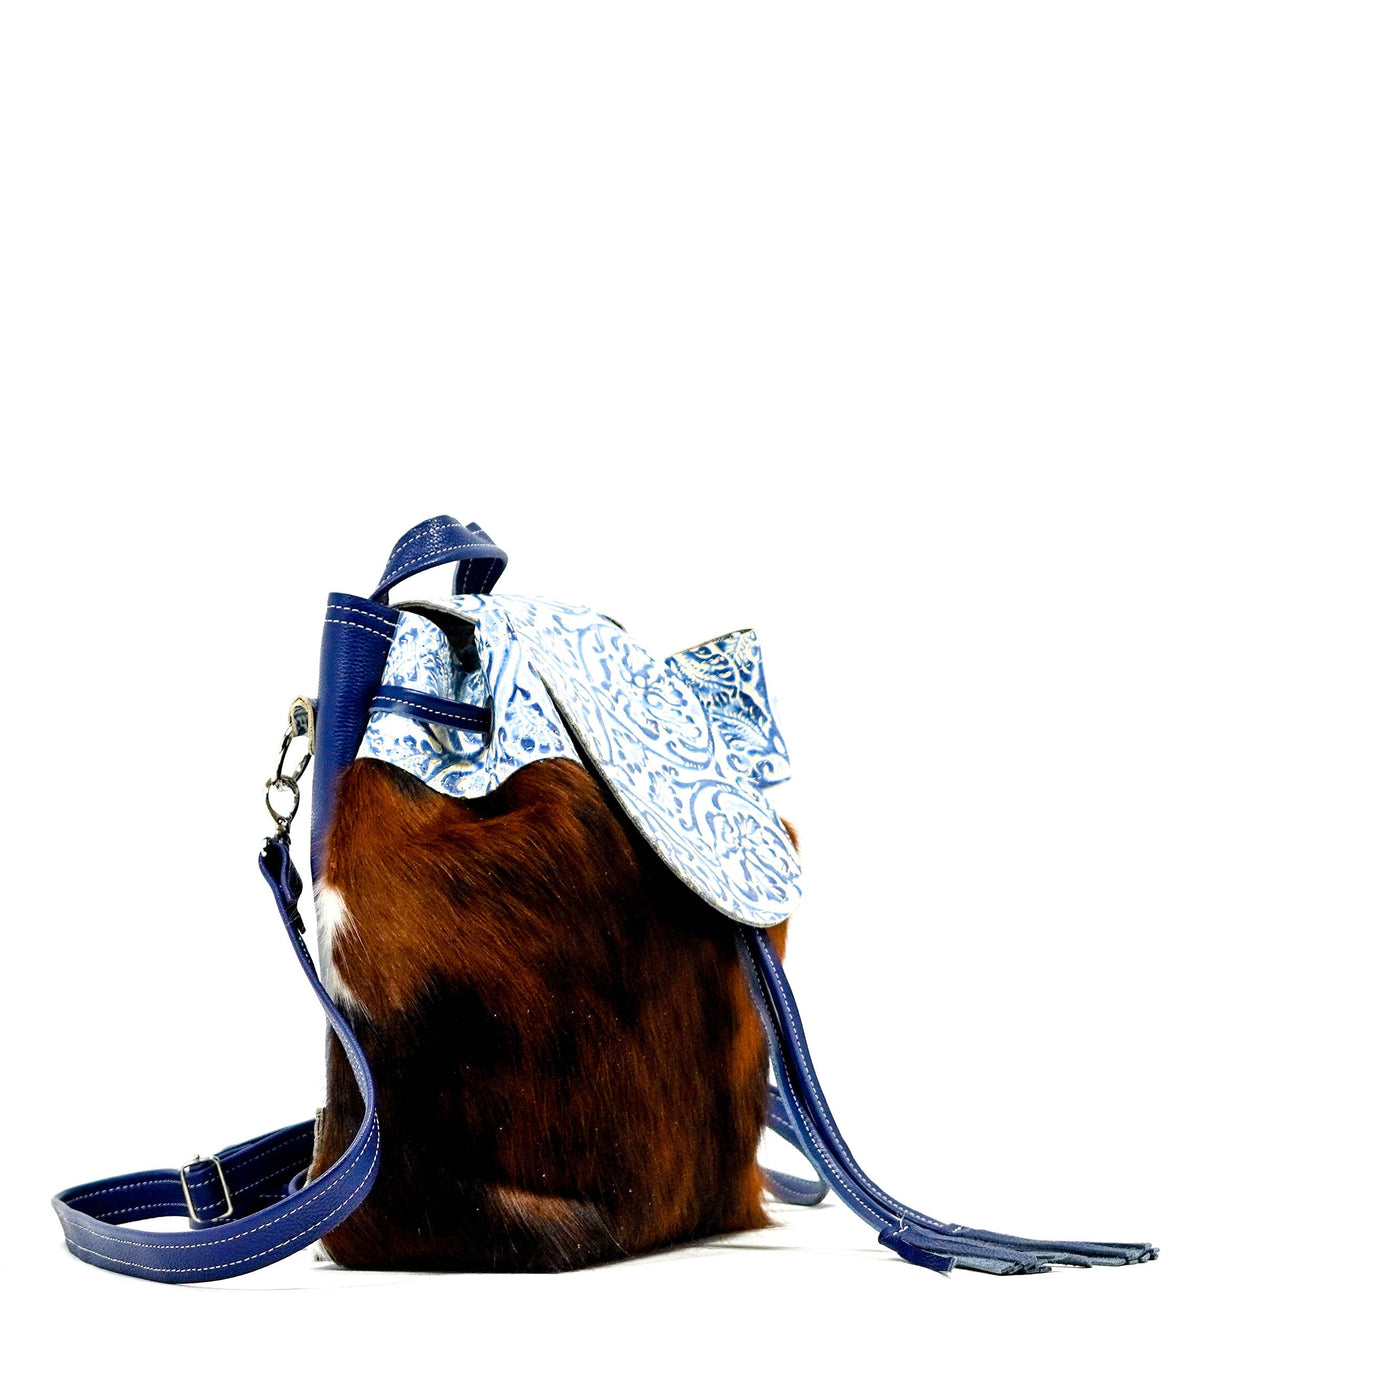 Mini Kelsea Backpack - Tricolor w/ Galaxy Tool-Mini Kelsea Backpack-Western-Cowhide-Bags-Handmade-Products-Gifts-Dancing Cactus Designs